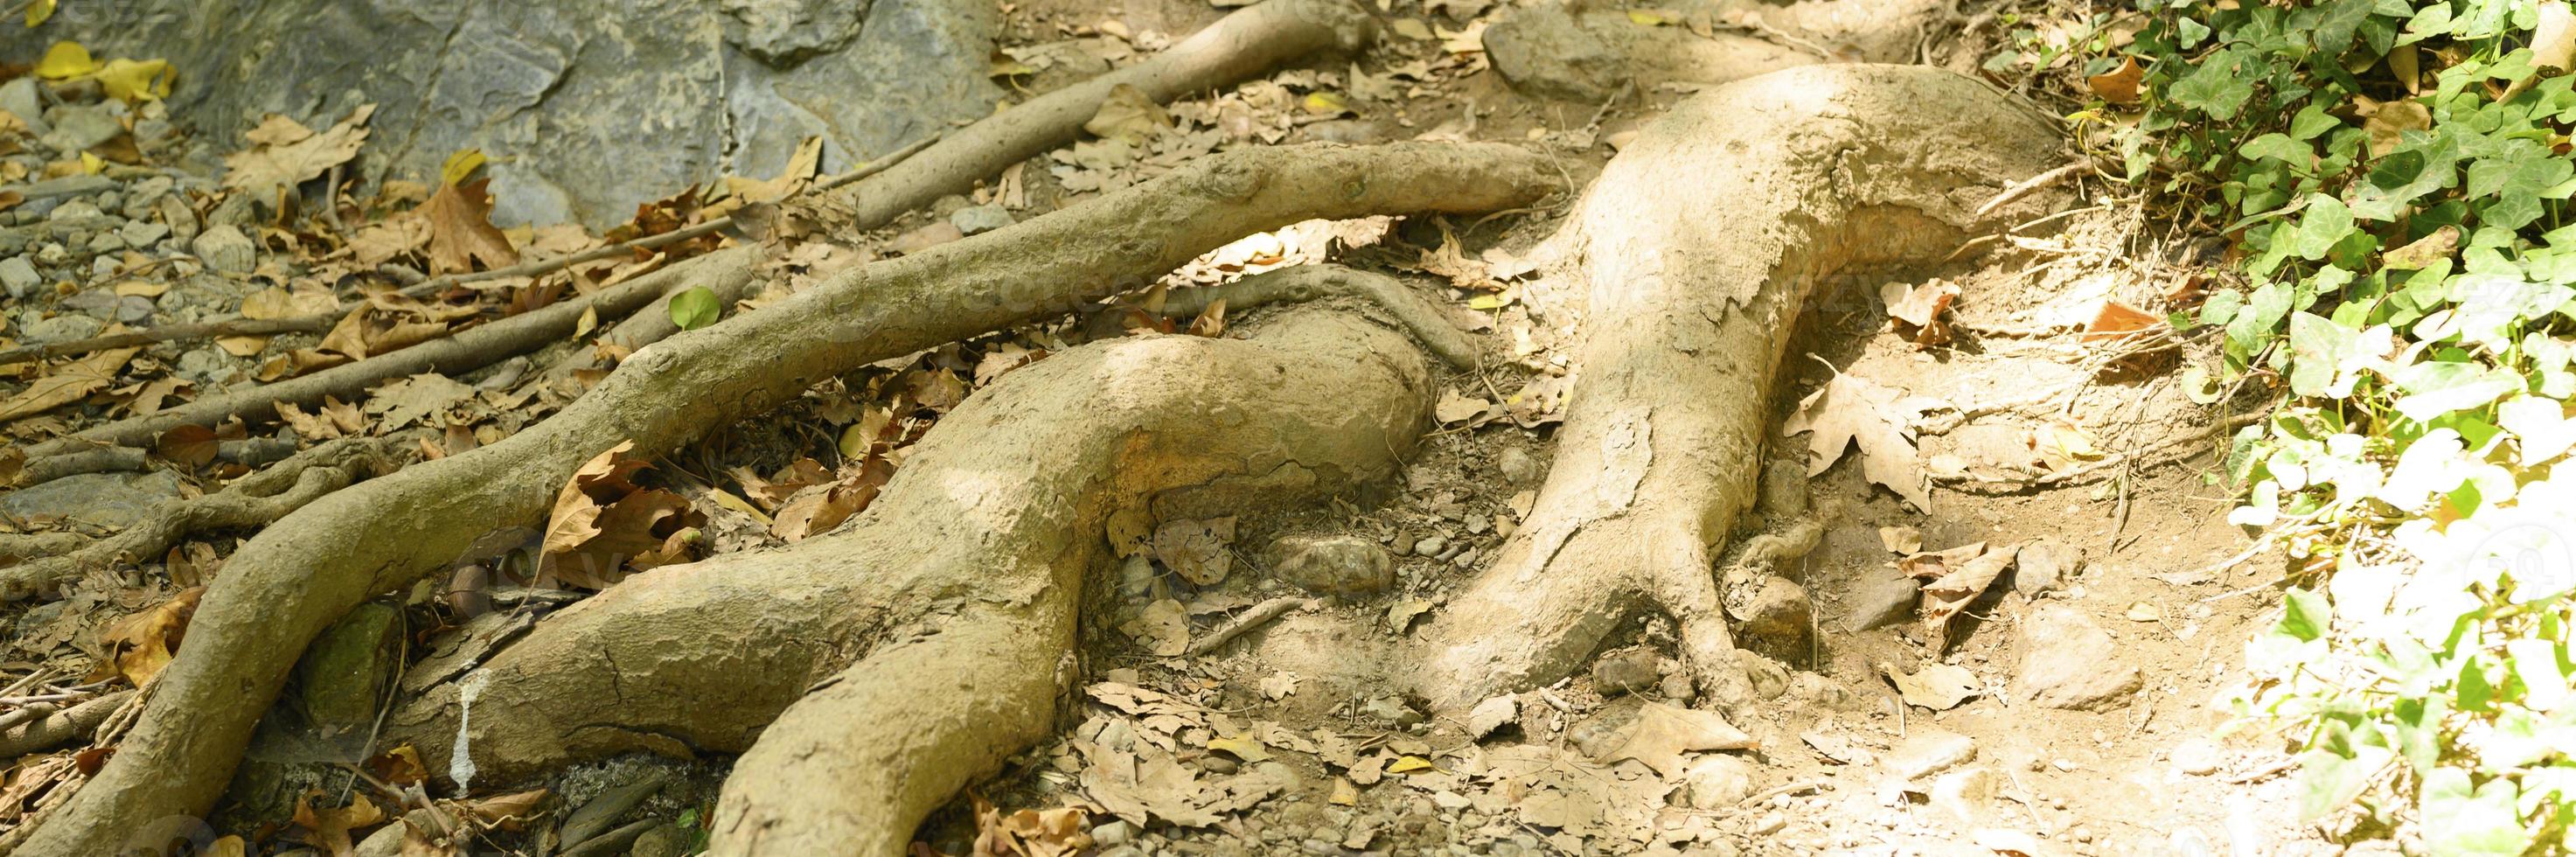 kale wortels van bomen die in de herfst uit de grond steken in rotswanden foto